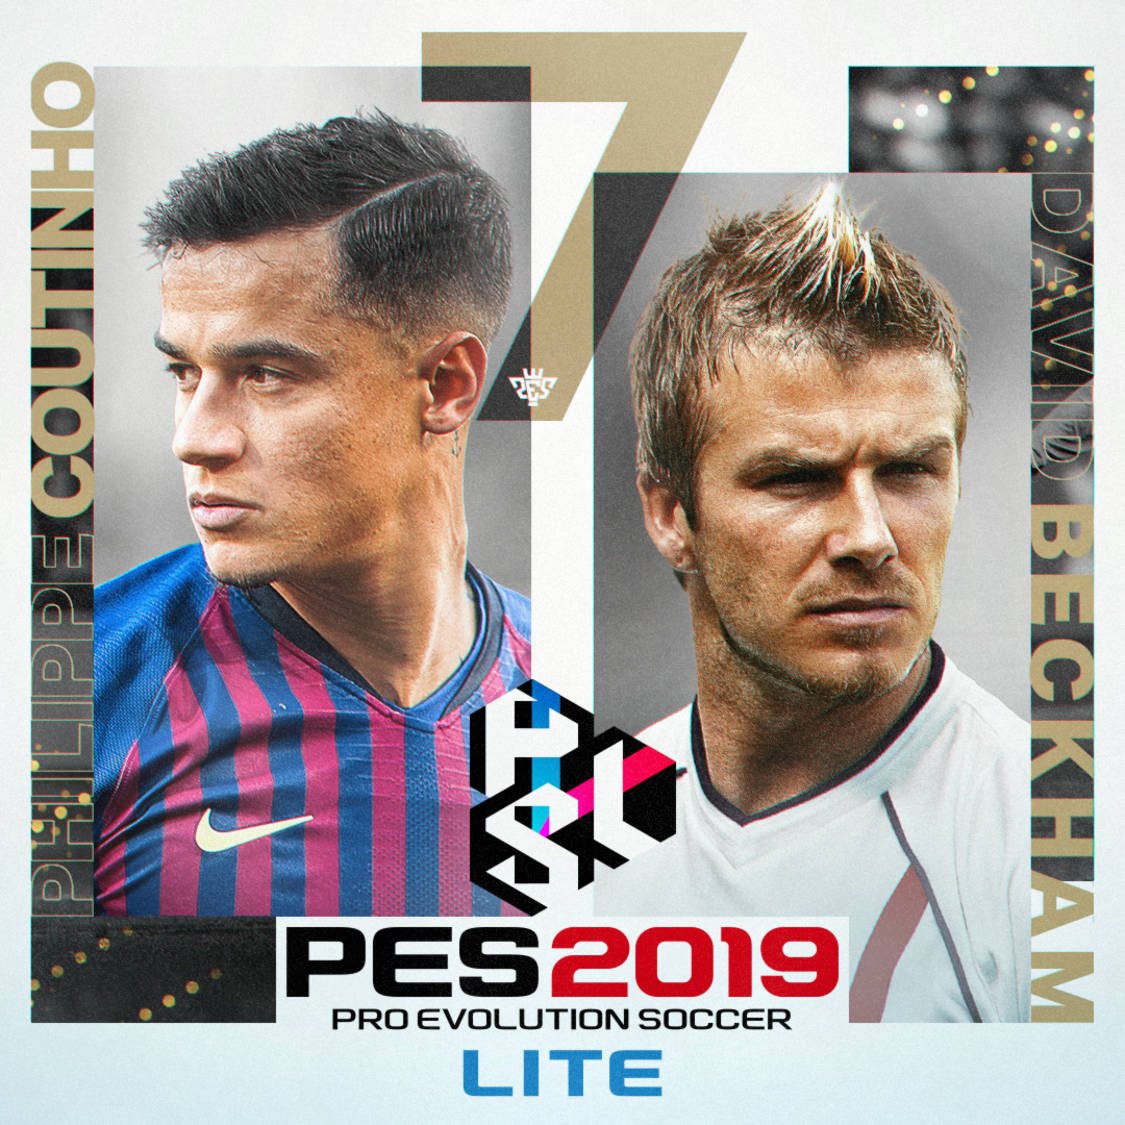 PES 2019 LITE, la versión free-to-play ya disponible